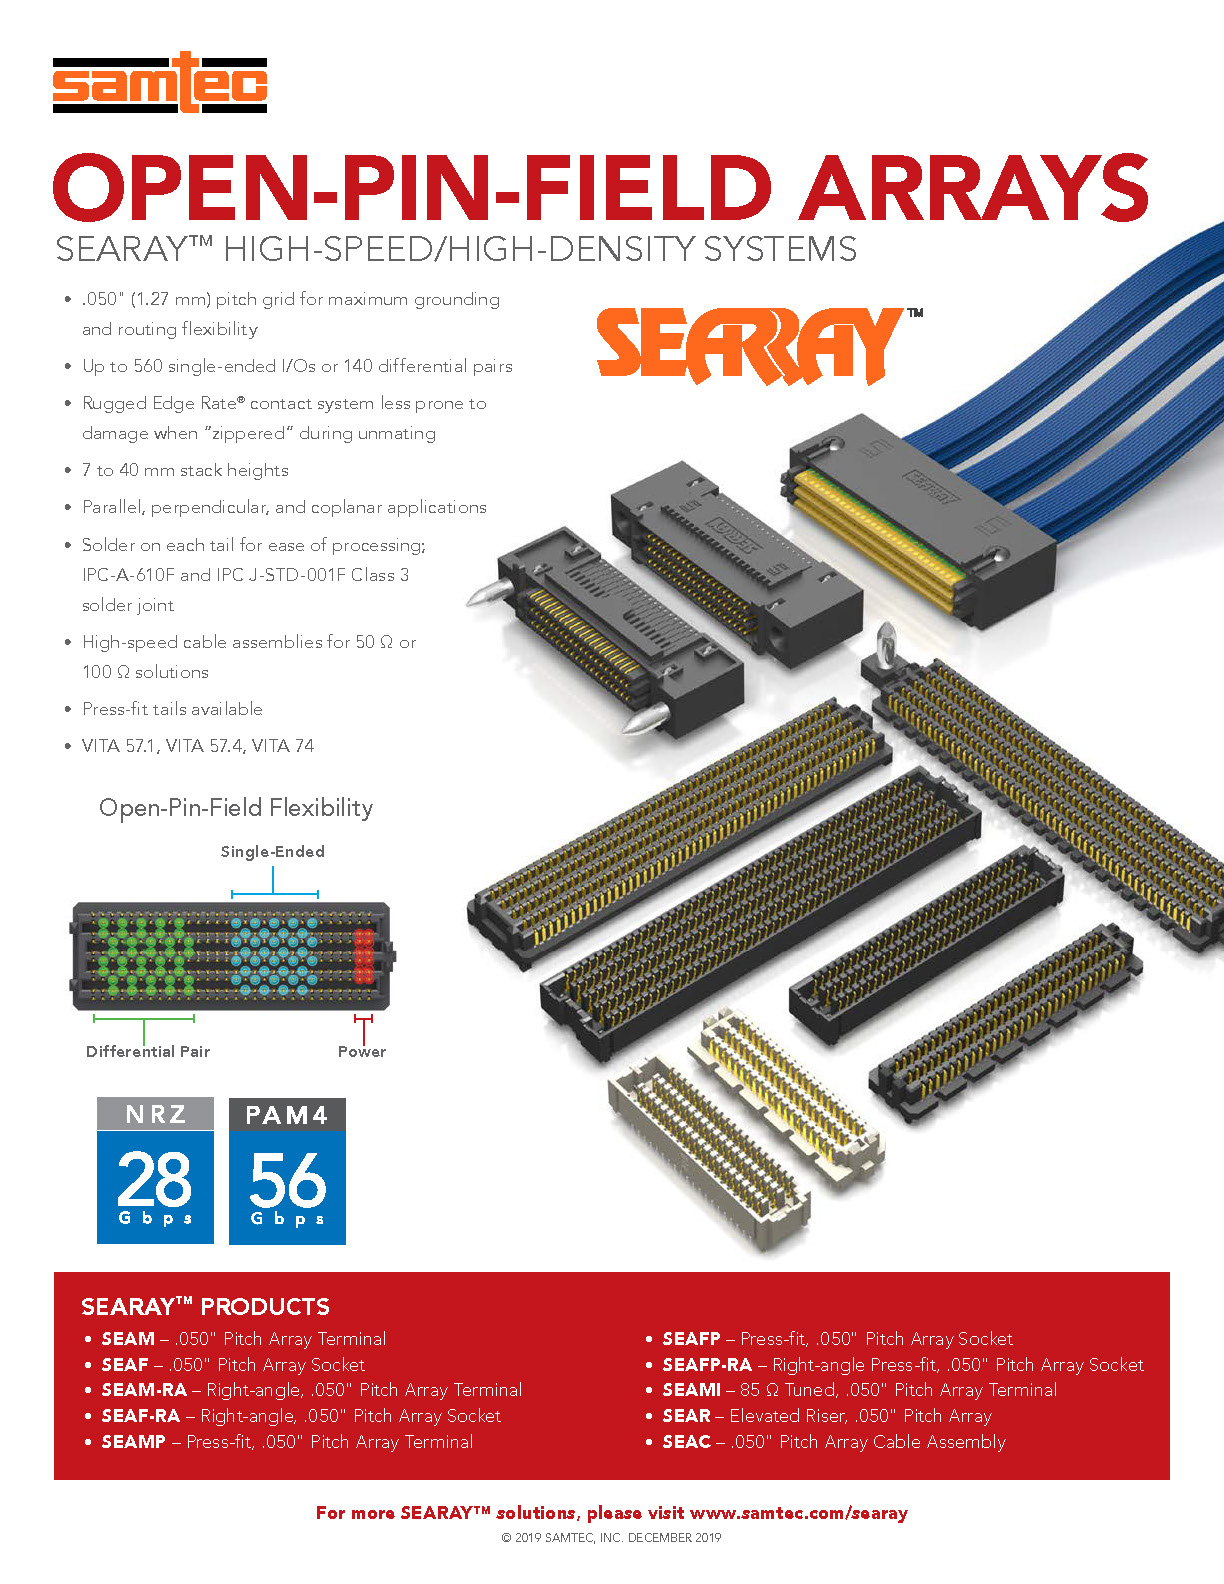 Searay Open-Pin-Field Arrays